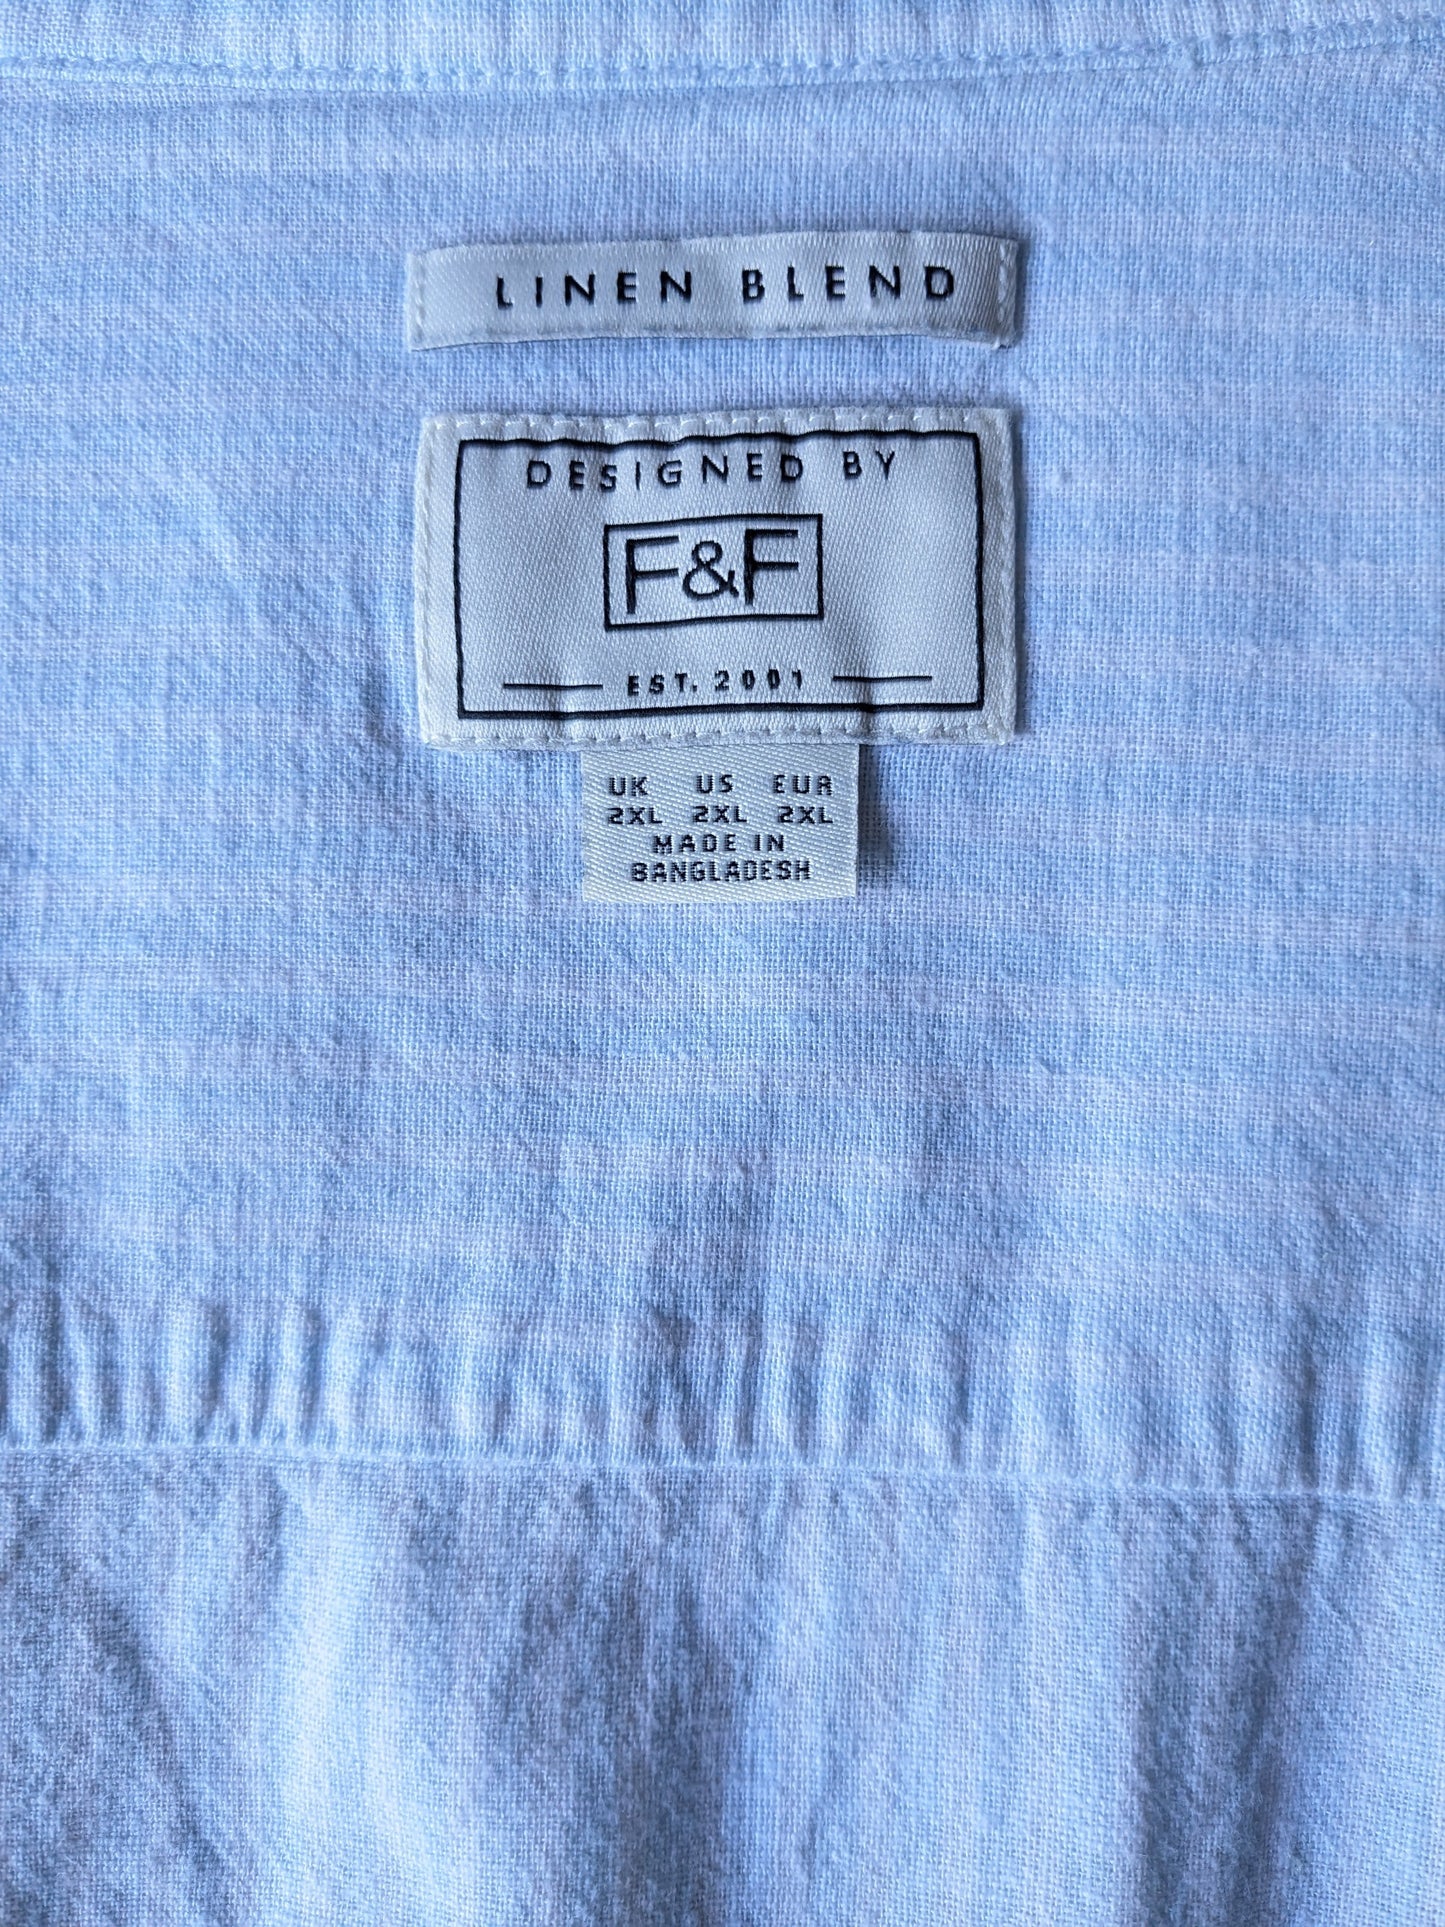 F&F Linnen overhemd met korte kraag. Blauw Wit gestreept. Maat XXL / 2XL.